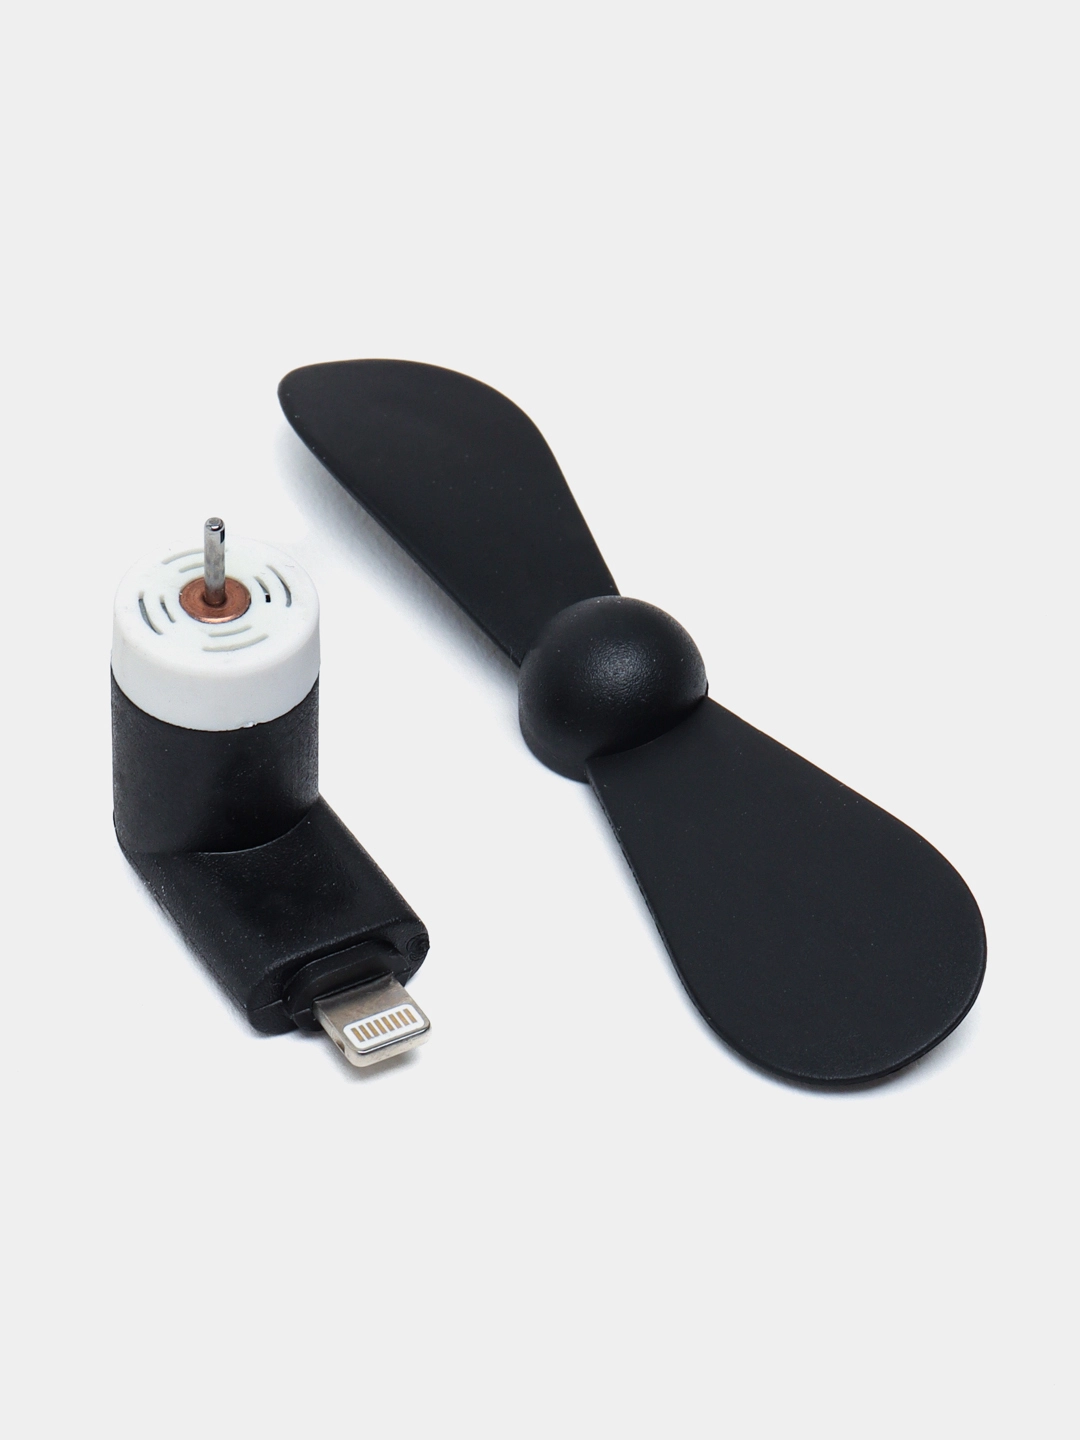 Мини вентилятор для iPhone USB онлайн